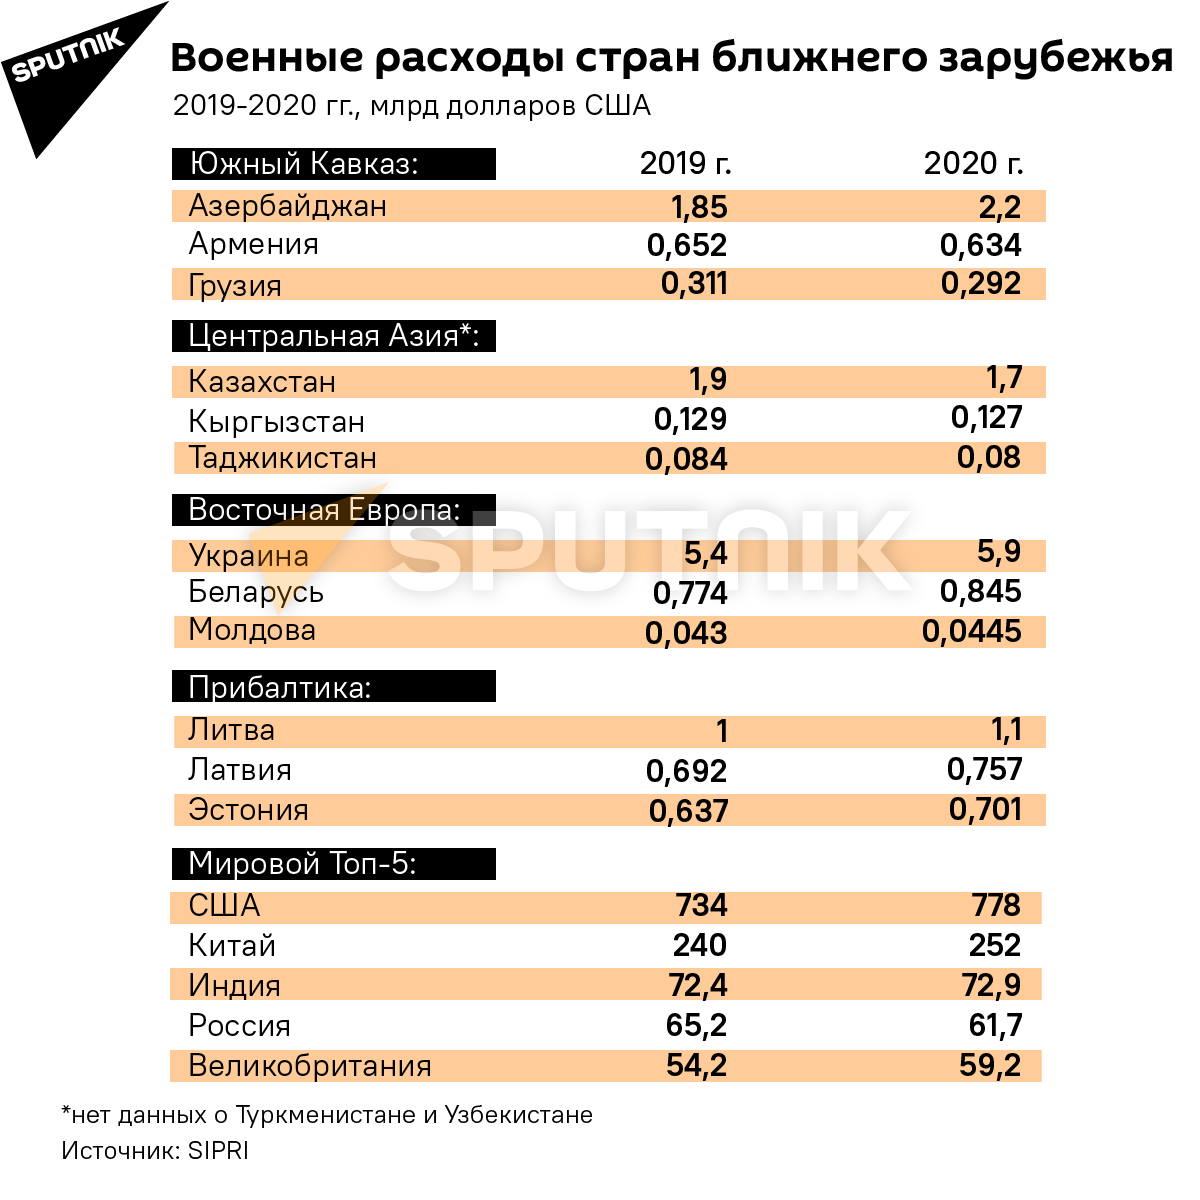 Военные расходы Грузии и других стран бывшего СССР - Sputnik Грузия, 1920, 03.05.2021